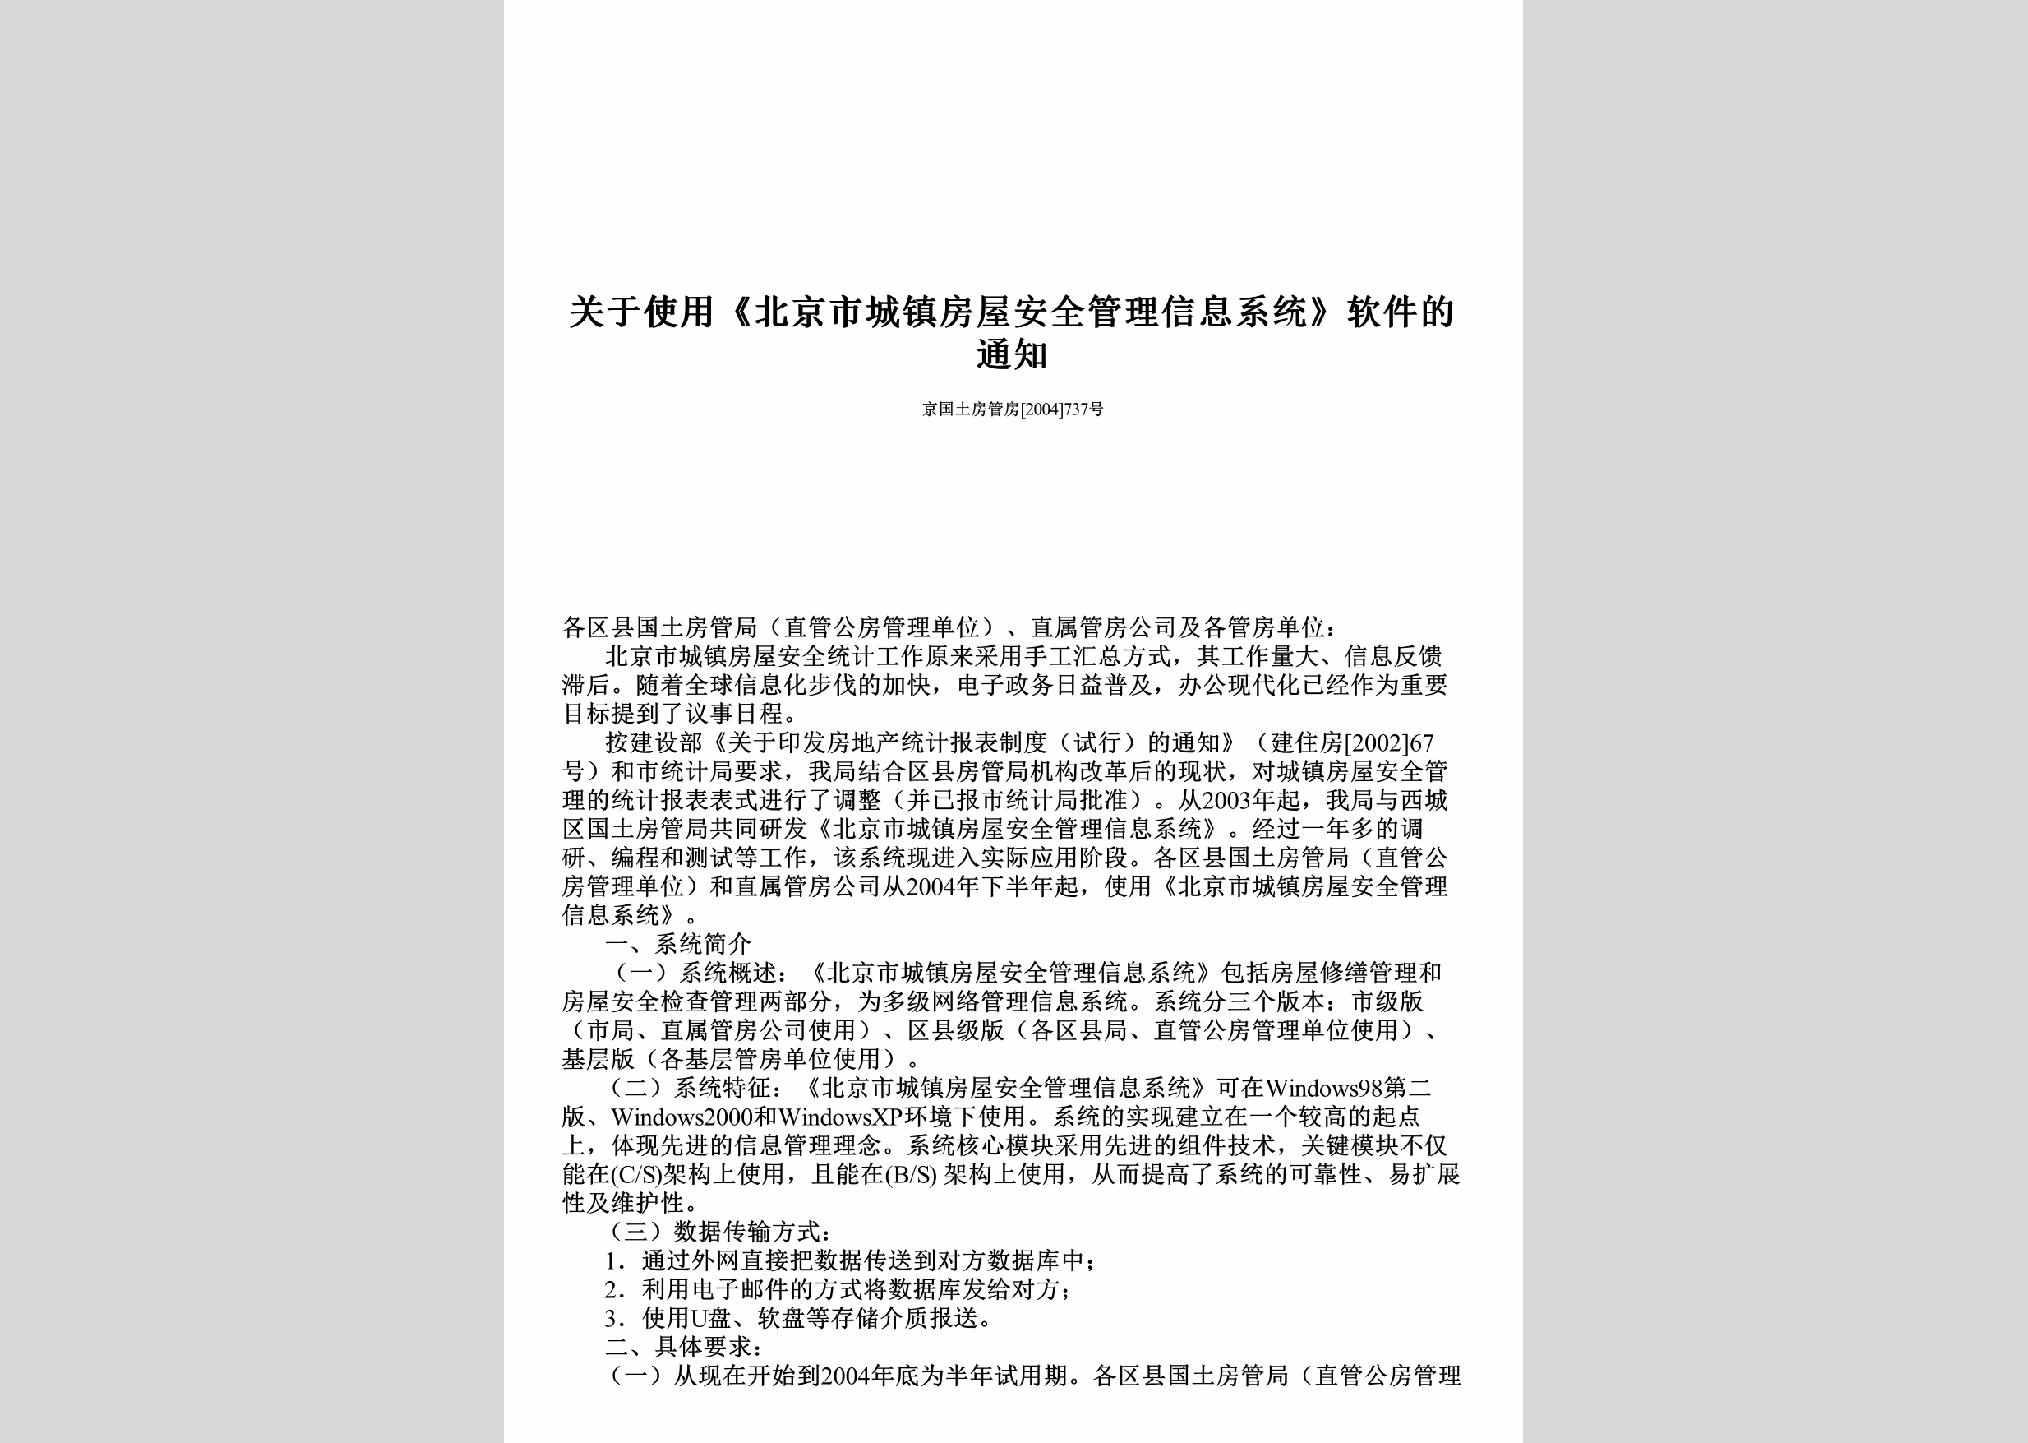 京国土房管房[2004]737号：关于使用《北京市城镇房屋安全管理信息系统》软件的通知